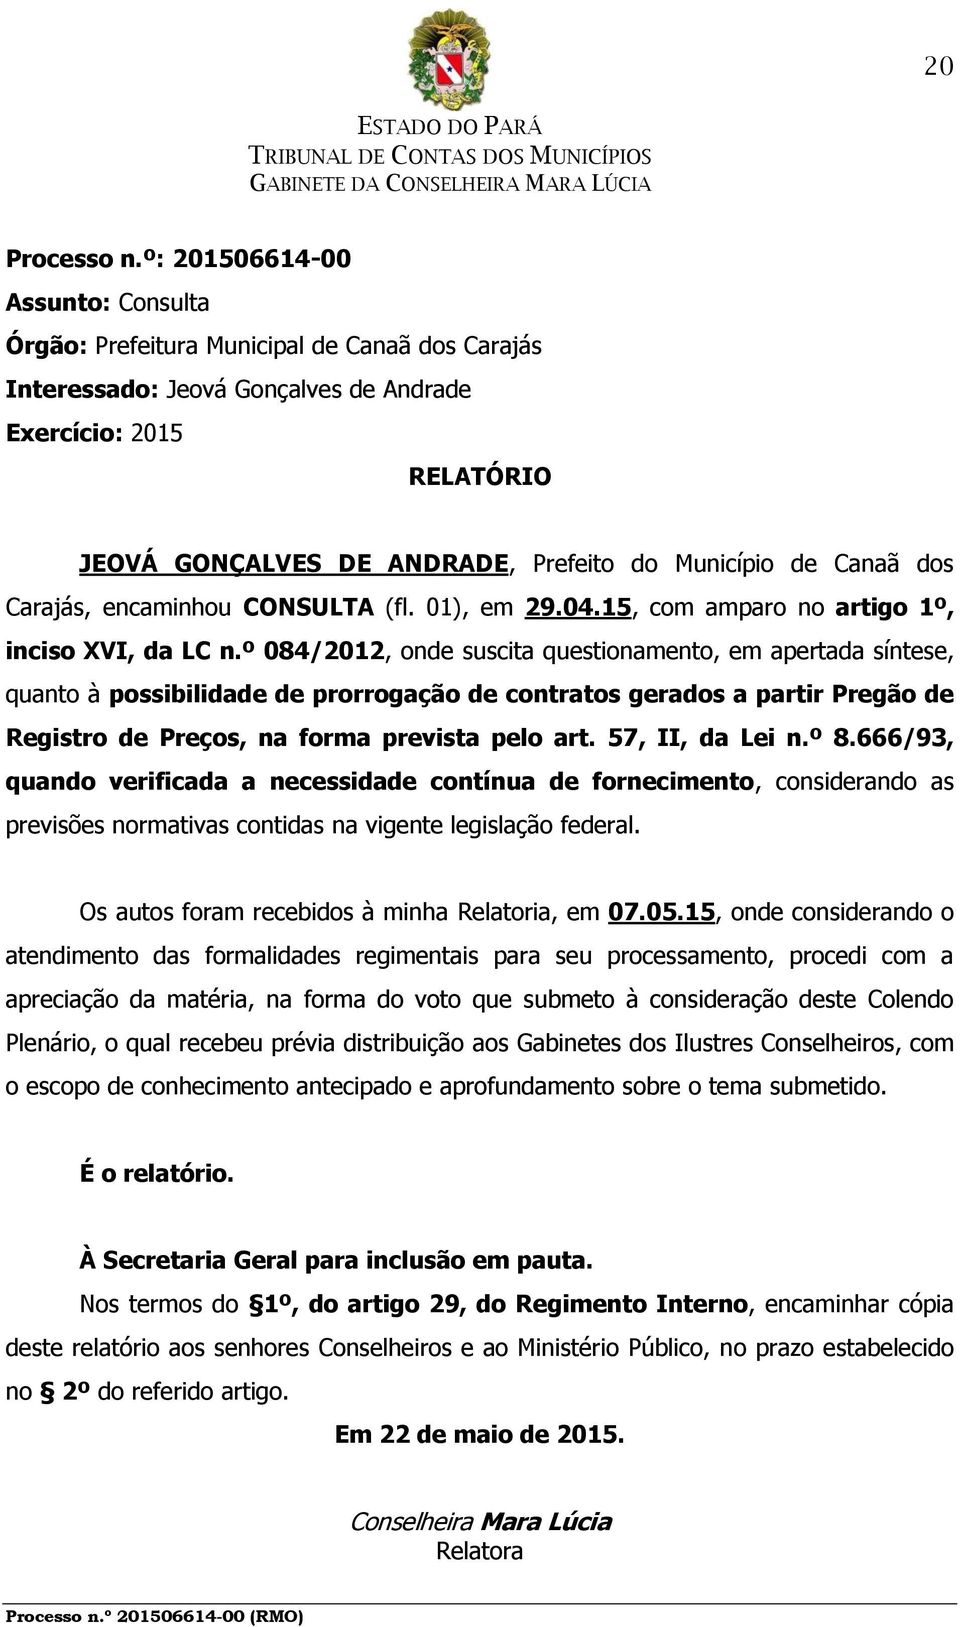 de Canaã dos Carajás, encaminhou CONSULTA (fl. 01), em 29.04.15, com amparo no artigo 1º, inciso XVI, da LC n.